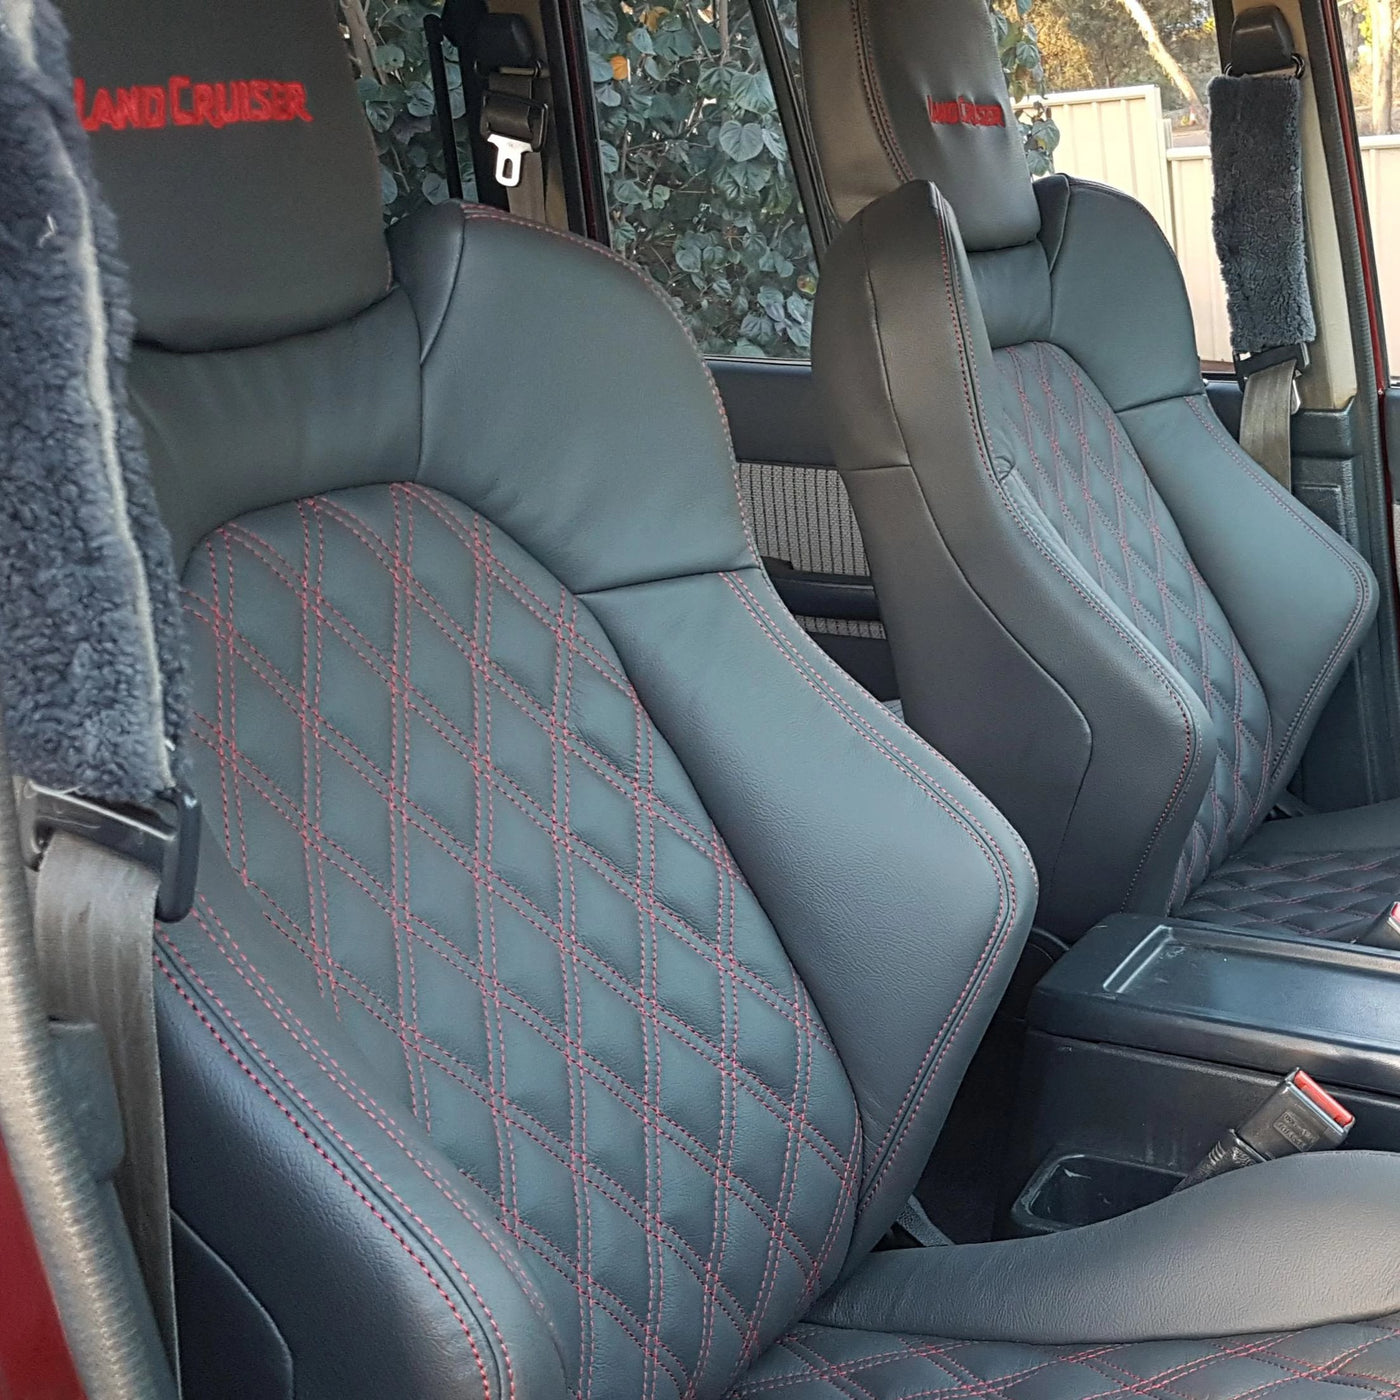 60 Series Landcruiser Seat Adapter Kits